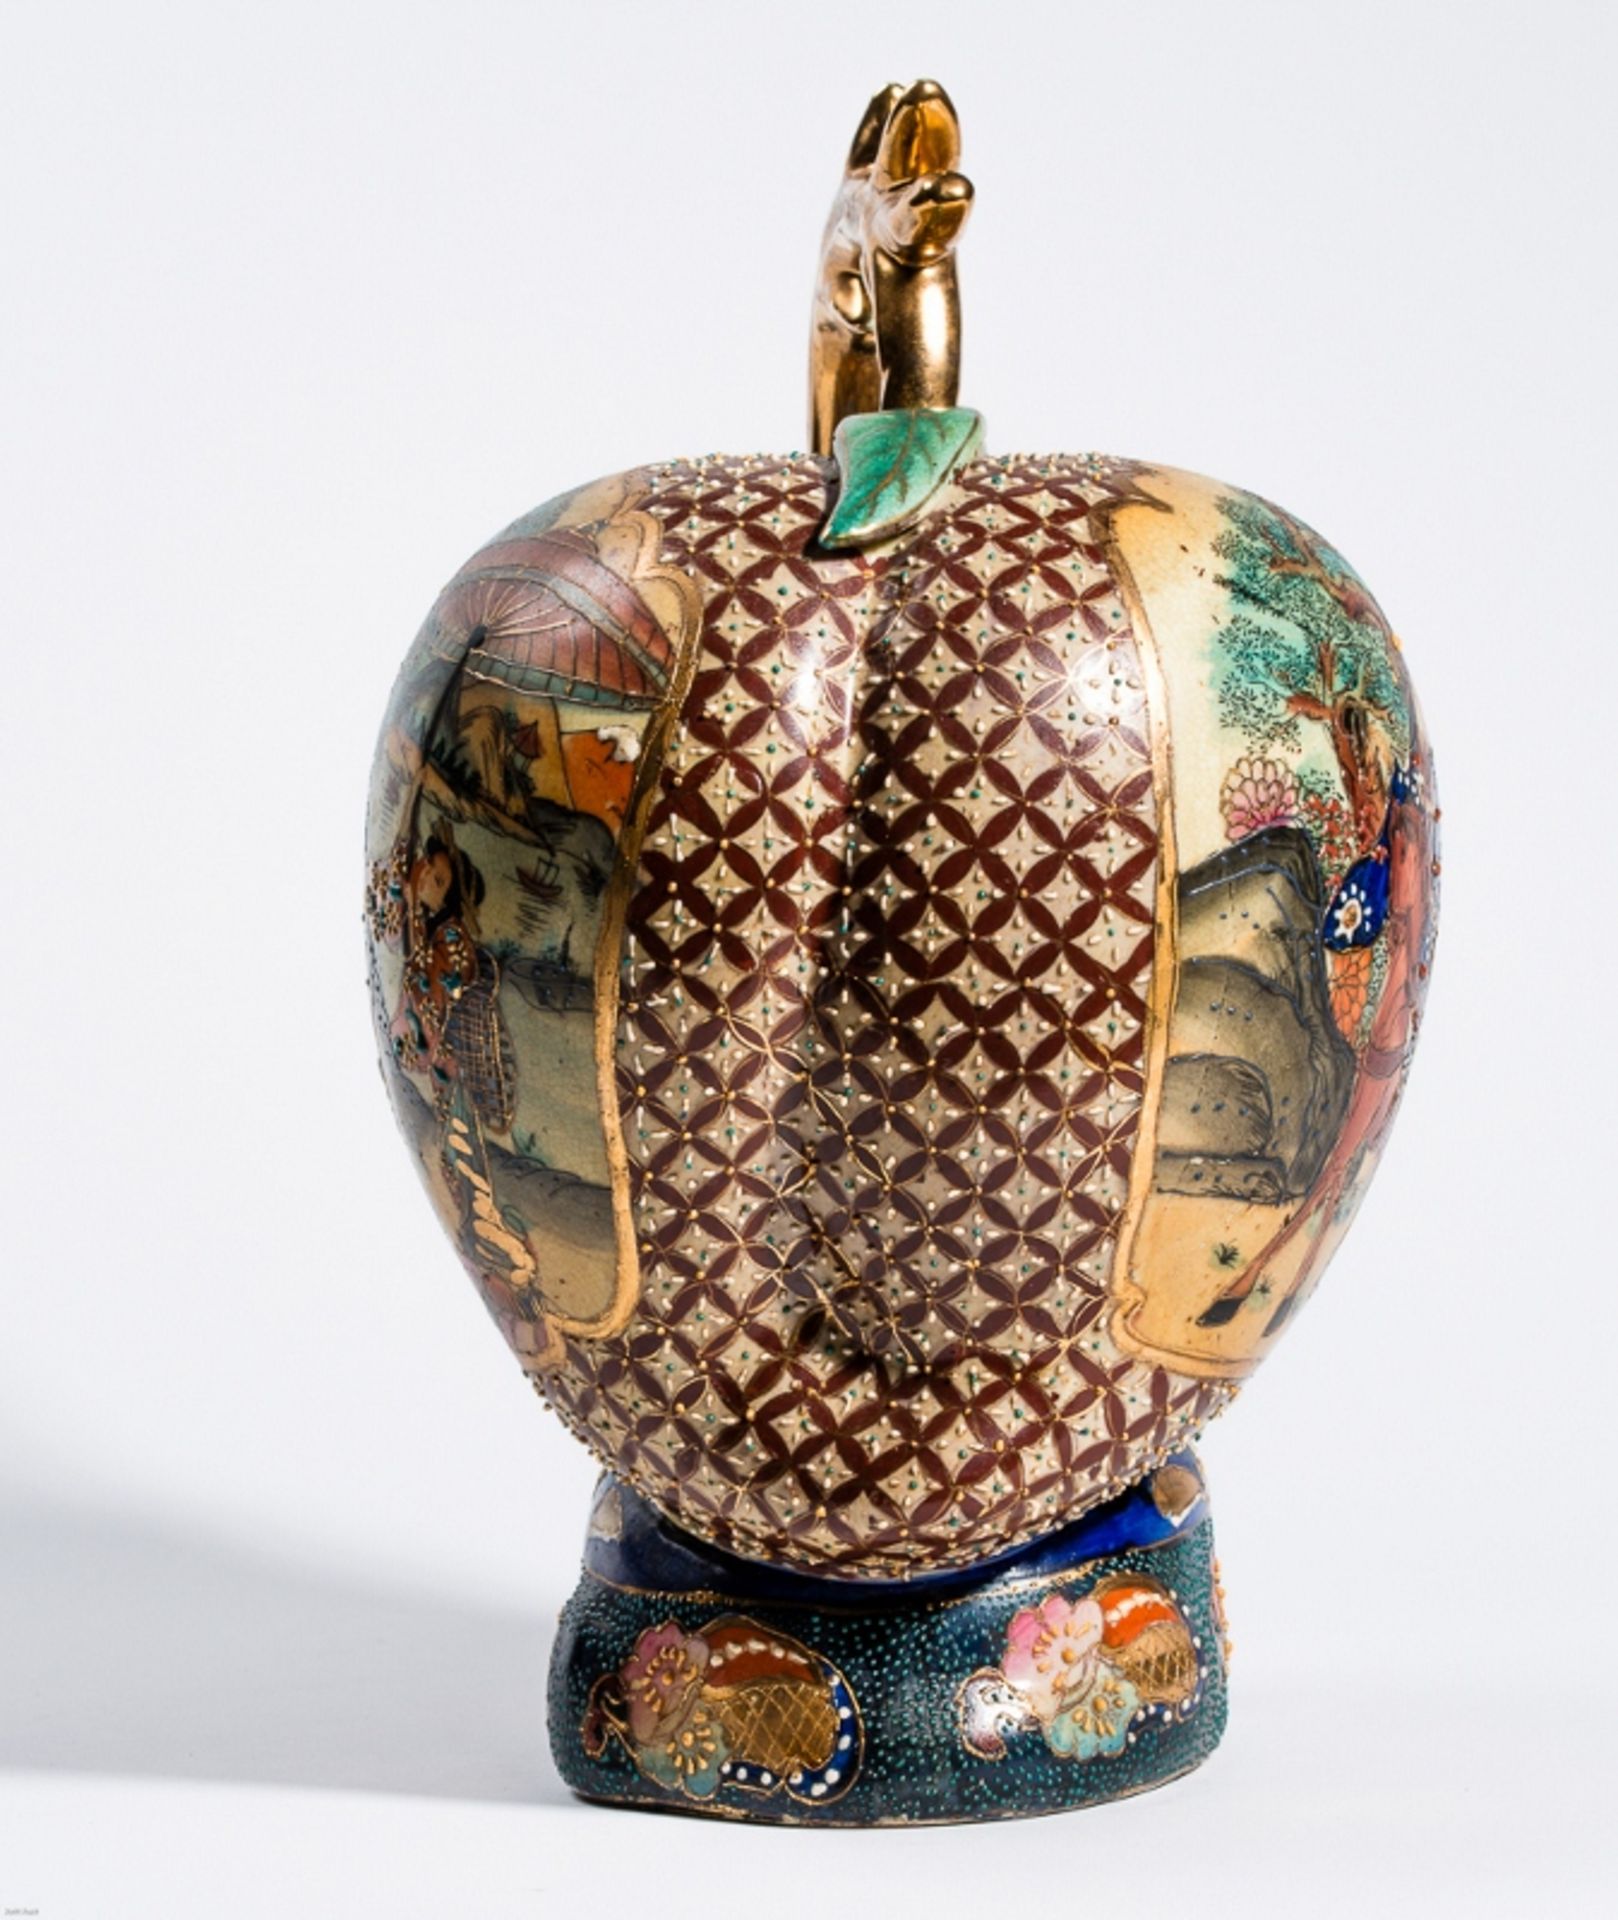 GROSSER LANGLEBENS-PFIRSICH MIT GOTTHEIT
In der Art der japan. Satsuma-Keramik mit Gold. ChinaEine - Bild 6 aus 8